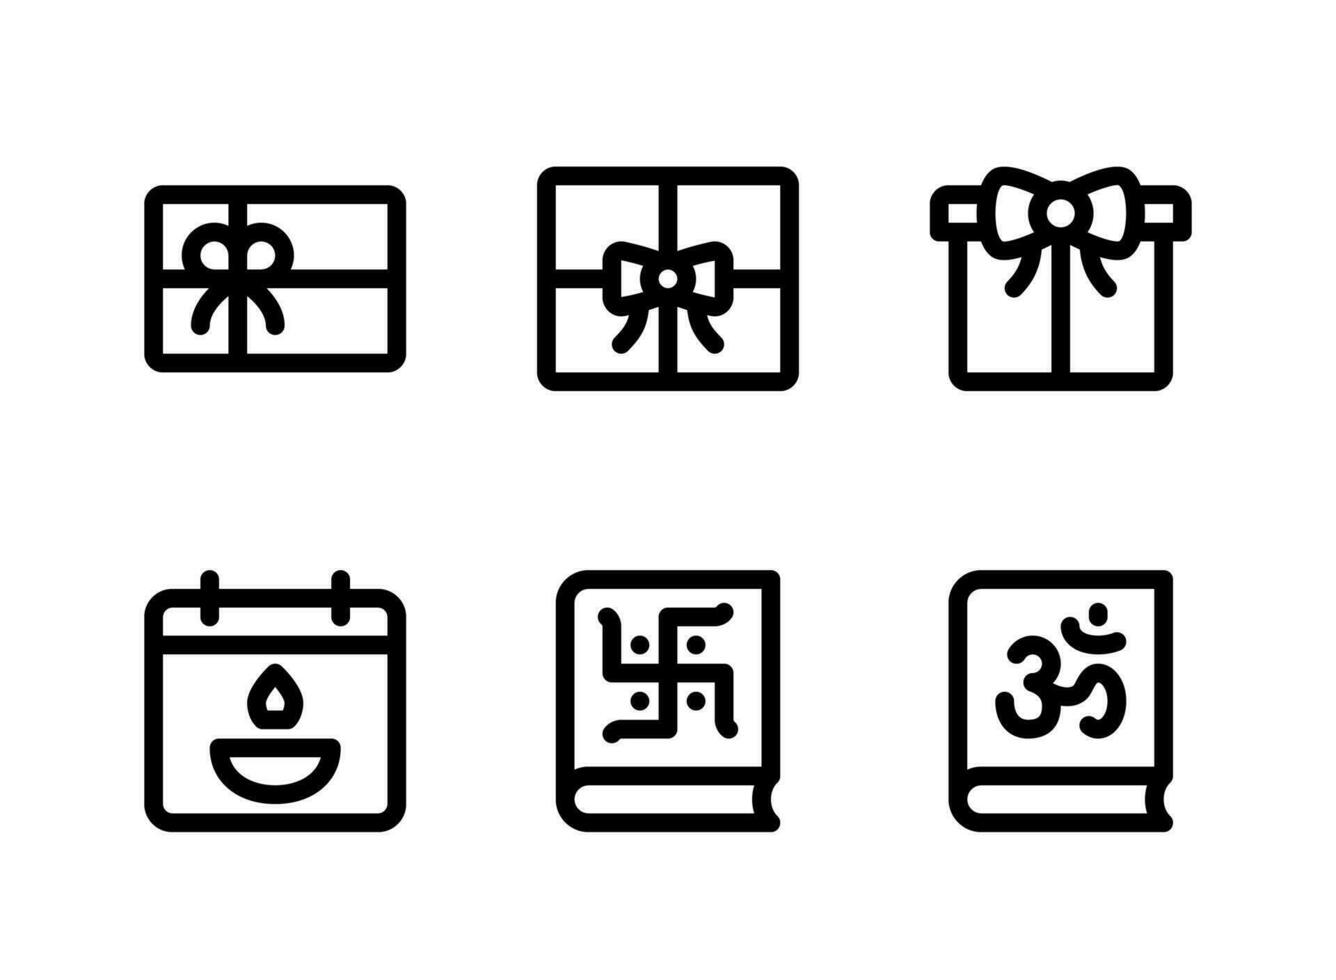 semplice set di icone di linee vettoriali relative al diwali